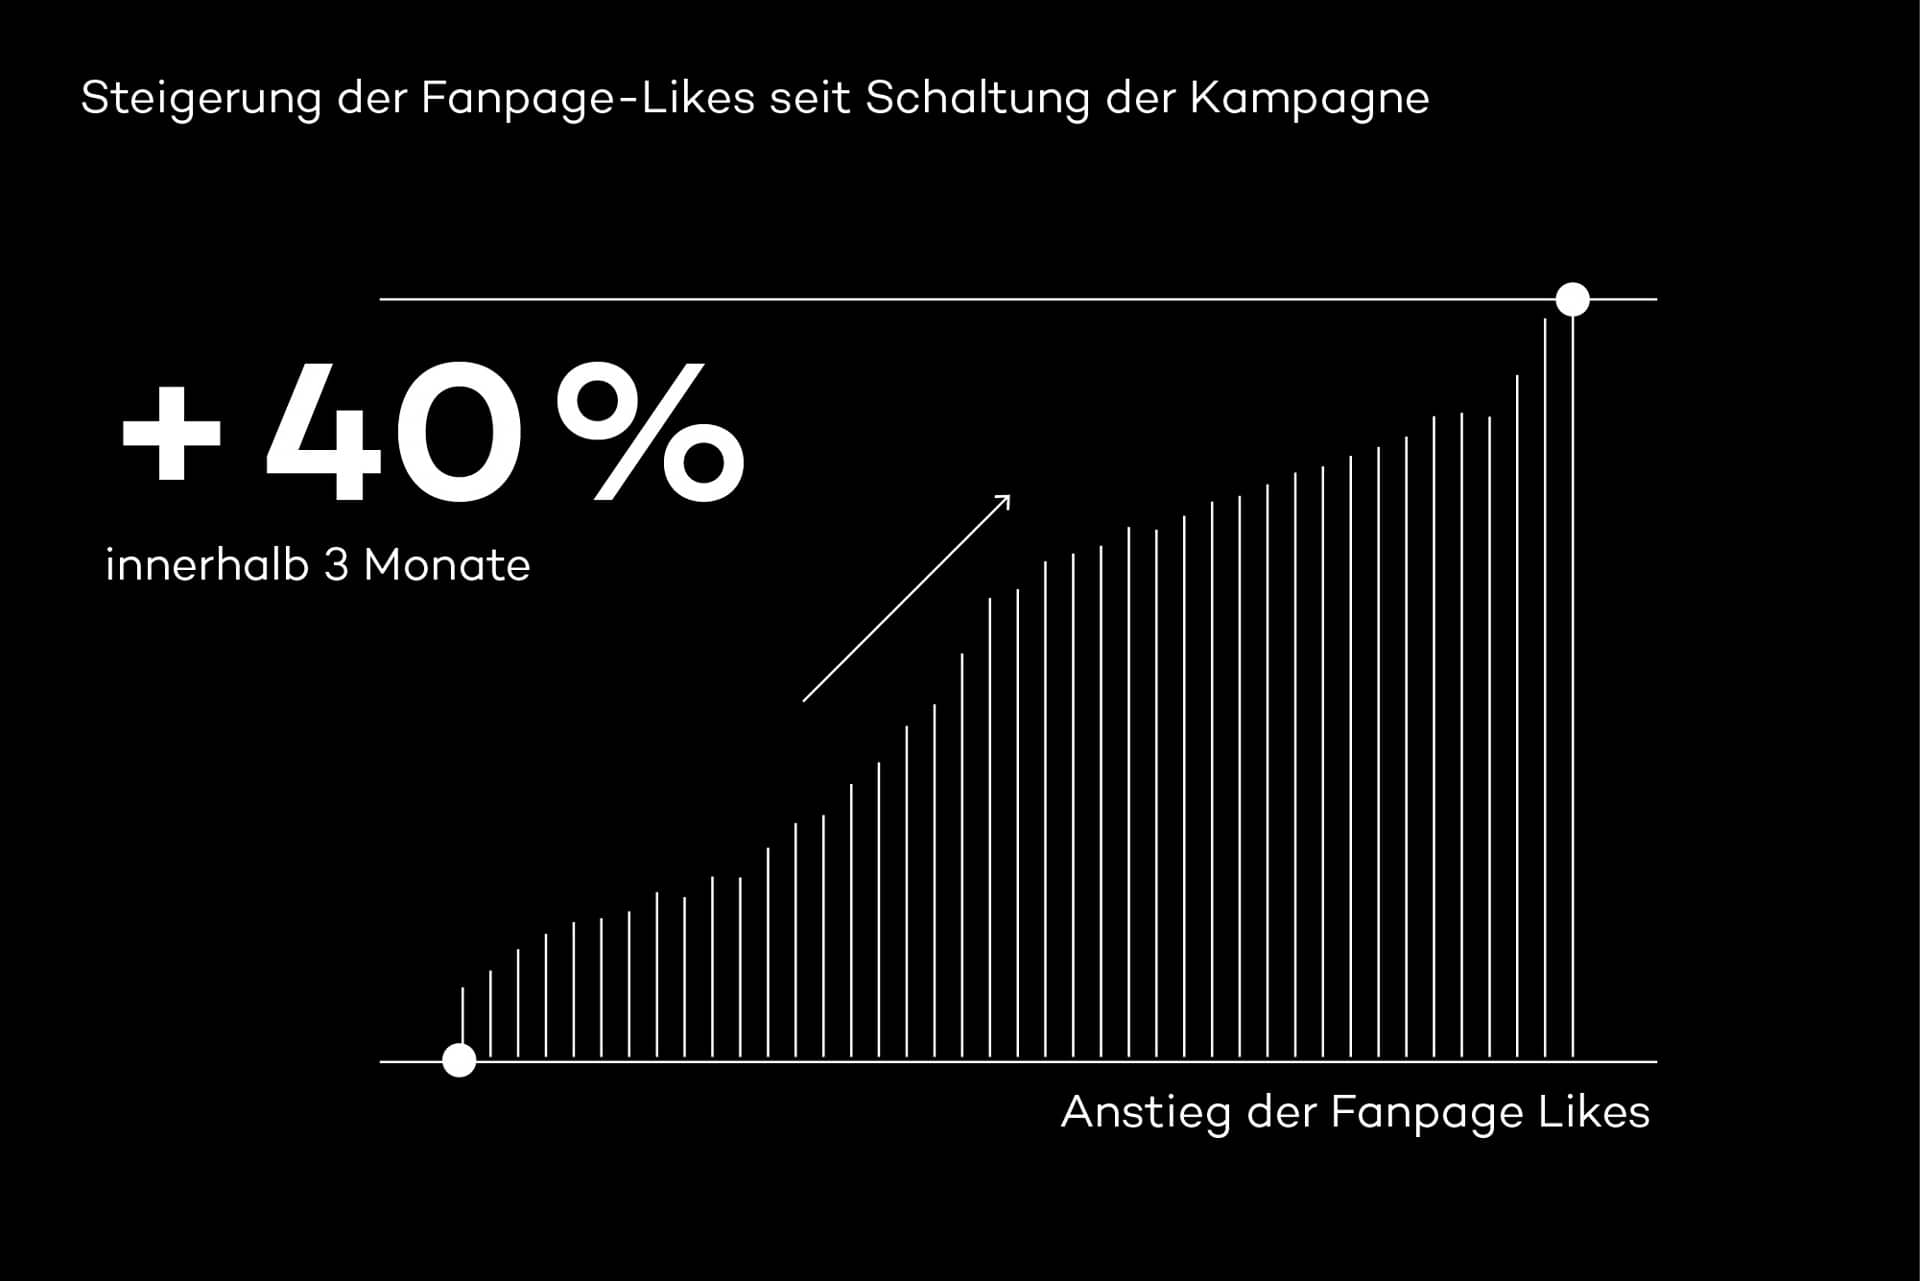 Grafik zum 40-prozentigen Anstieg der Fanpage-Likes innerhalb von 3 Monaten